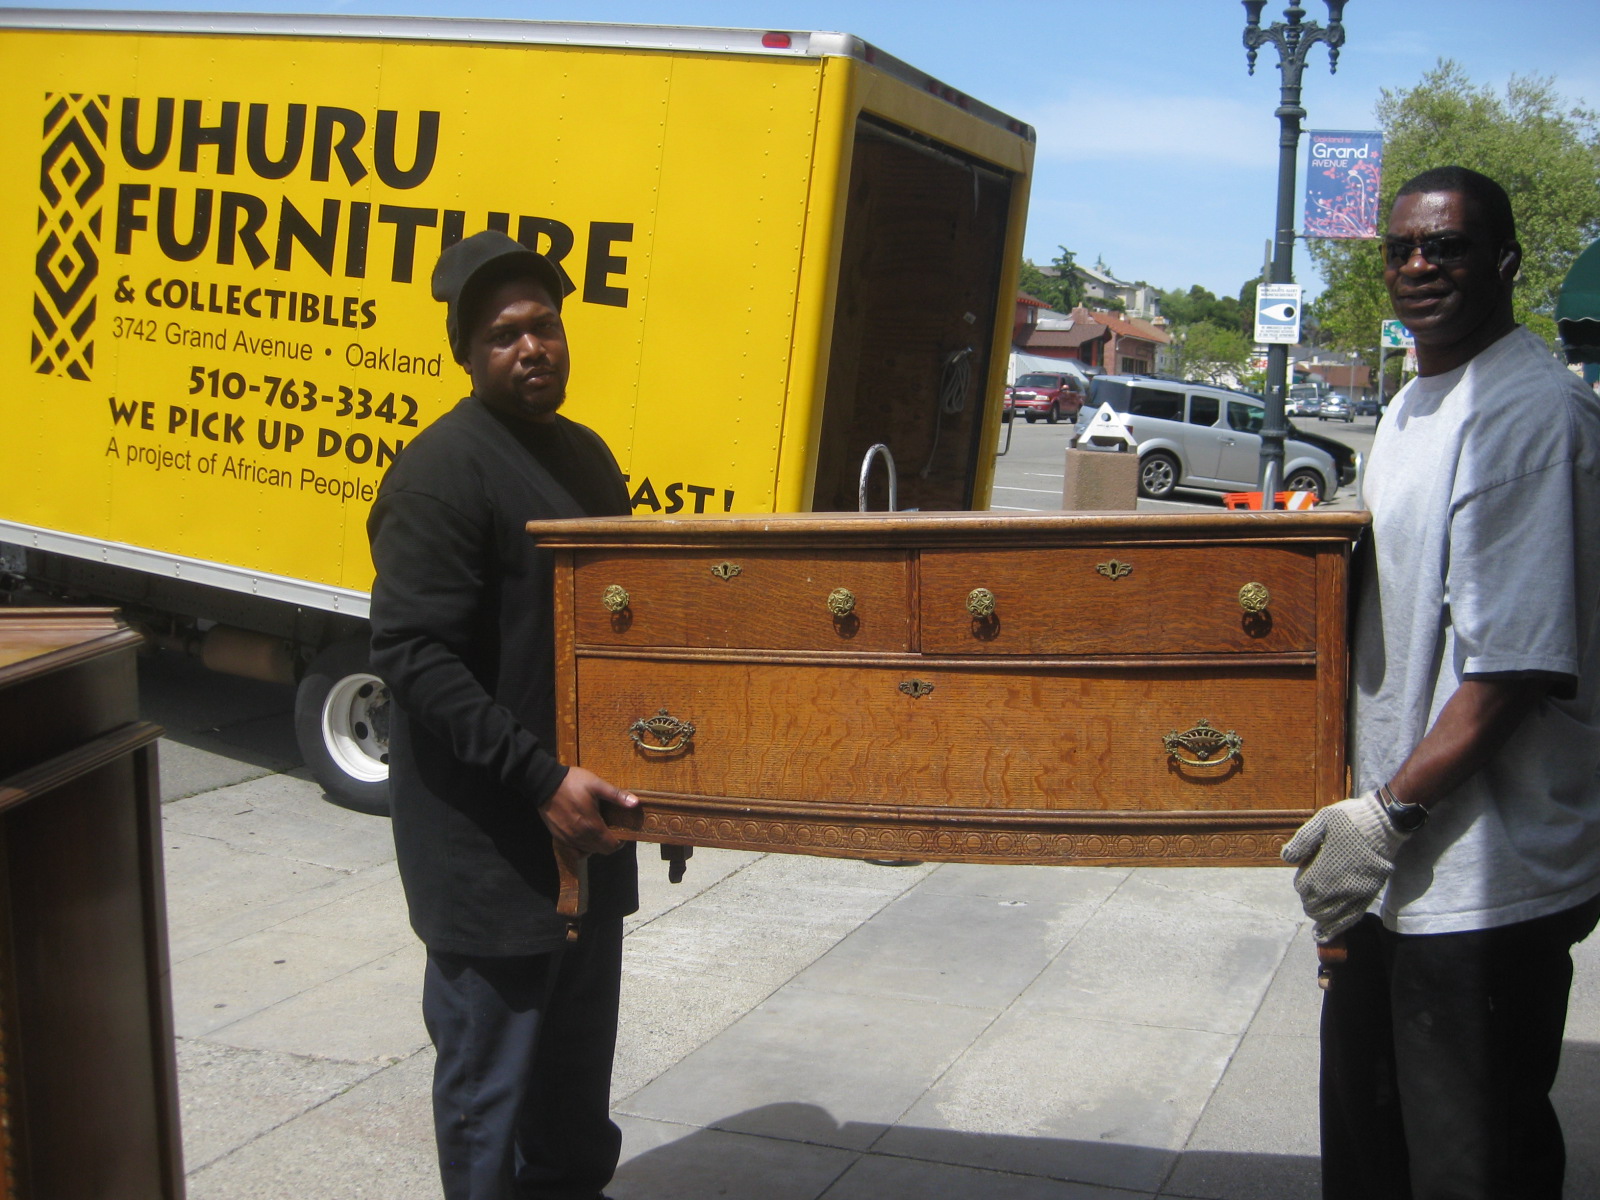 UHURU FURNITURE & COLLECTIBLES Donate Furniture